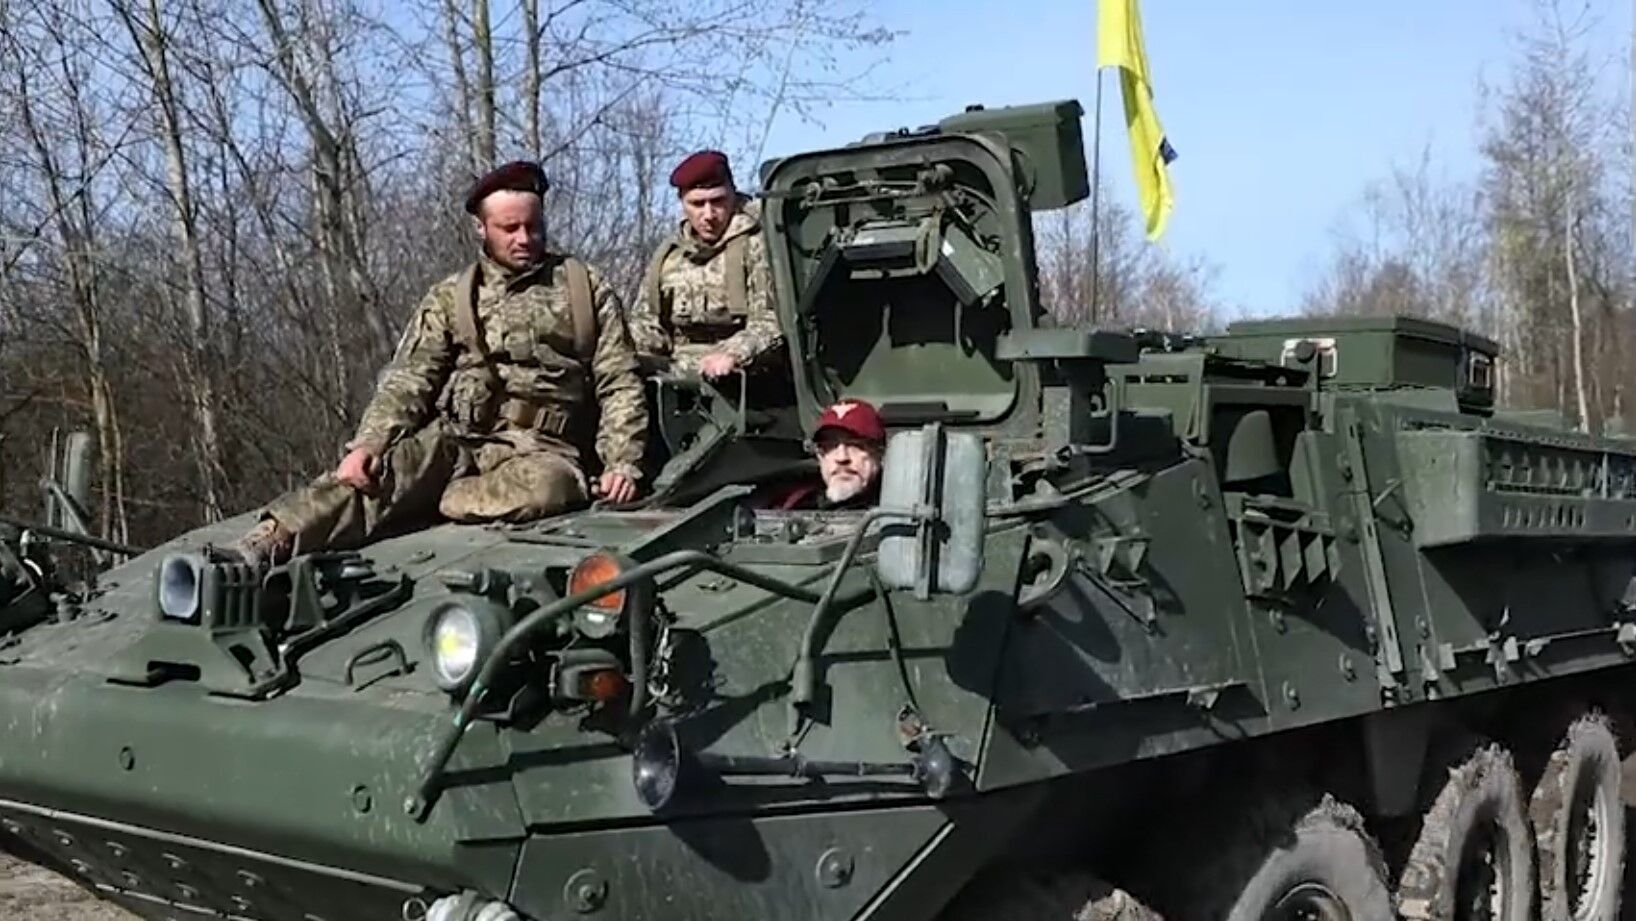 Резніков з українськими десантниками "обкатали" чергову партію західної військової техніки: Strykers і Cougars у вправних руках. Відео